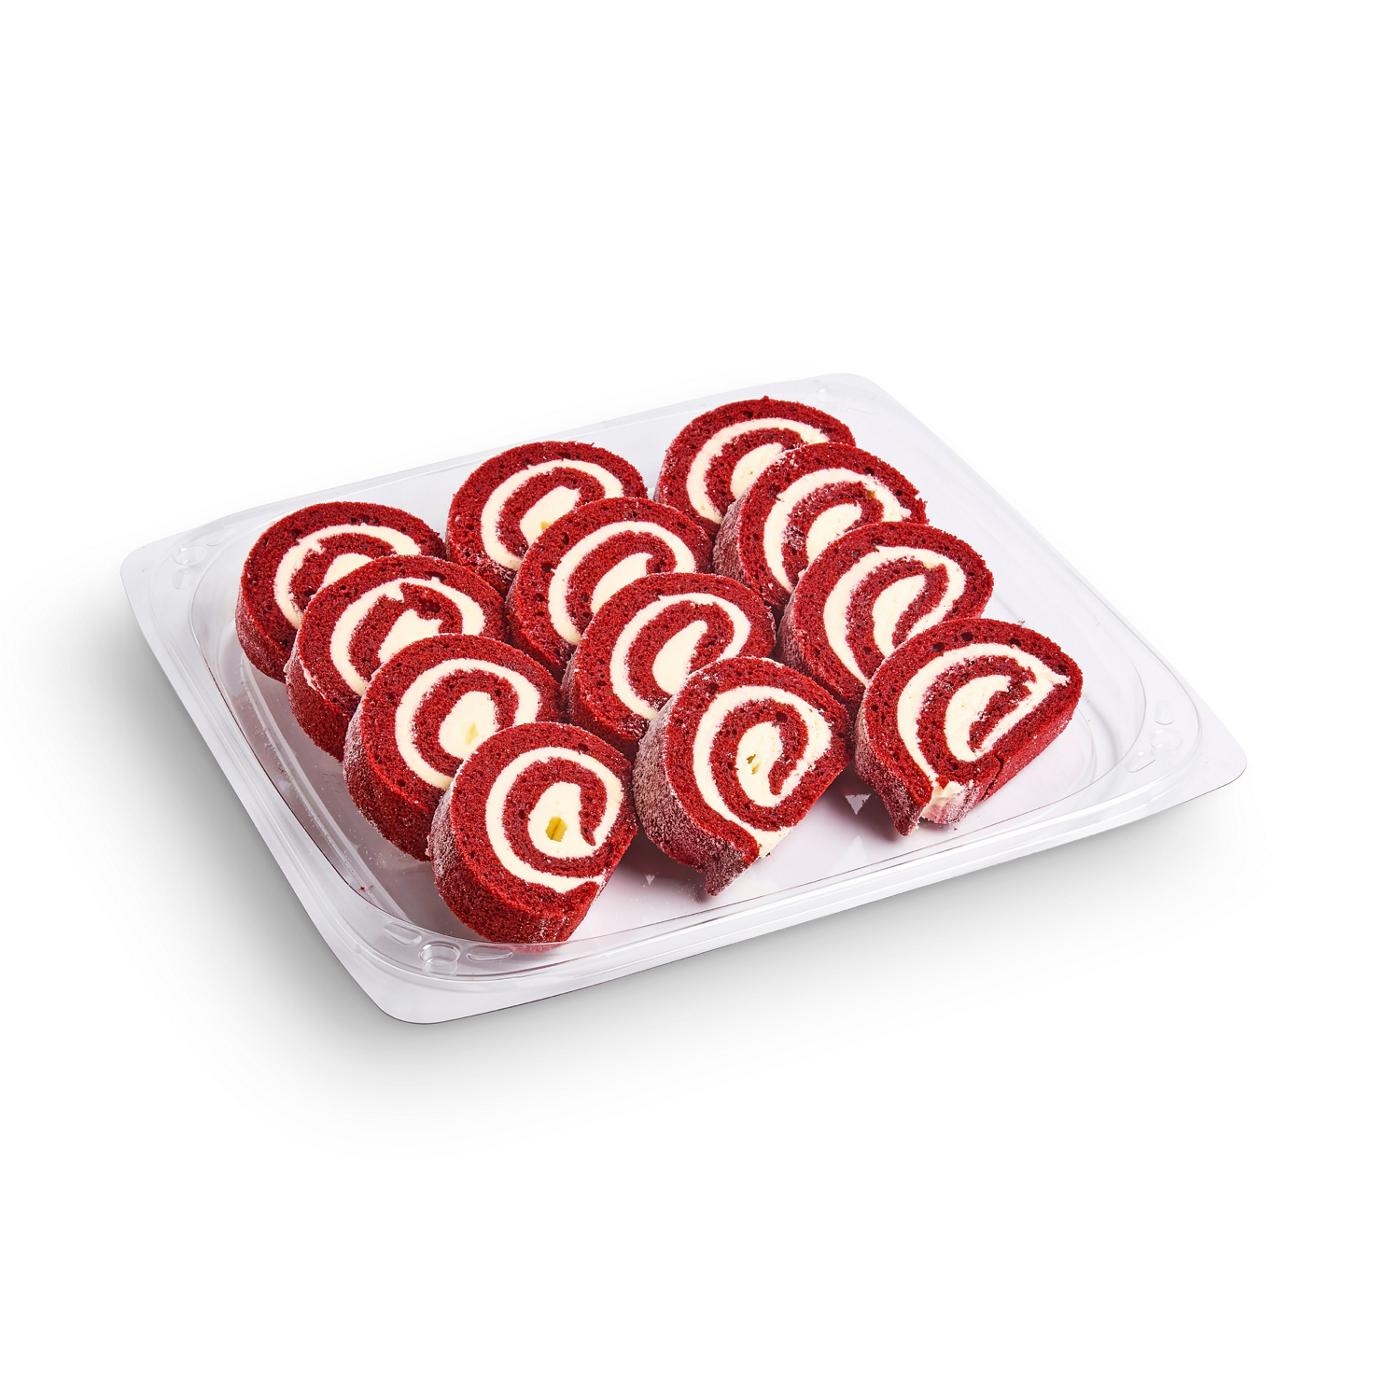 H-E-B Bakery Party Tray - Red Velvet Cake Rolls; image 3 of 3